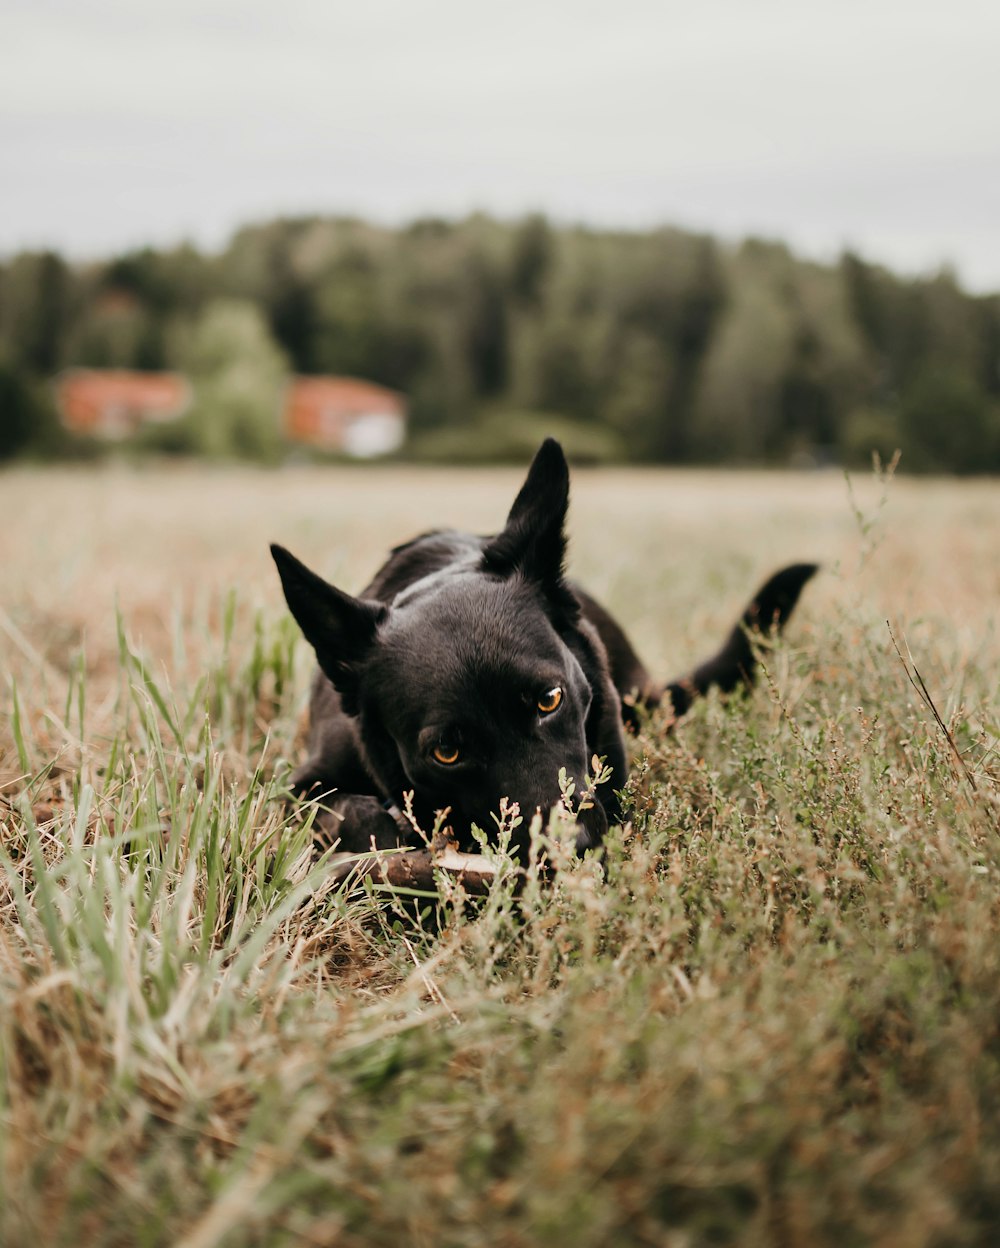 緑の芝生のフィールドでの犬のセレクティブフォーカス写真